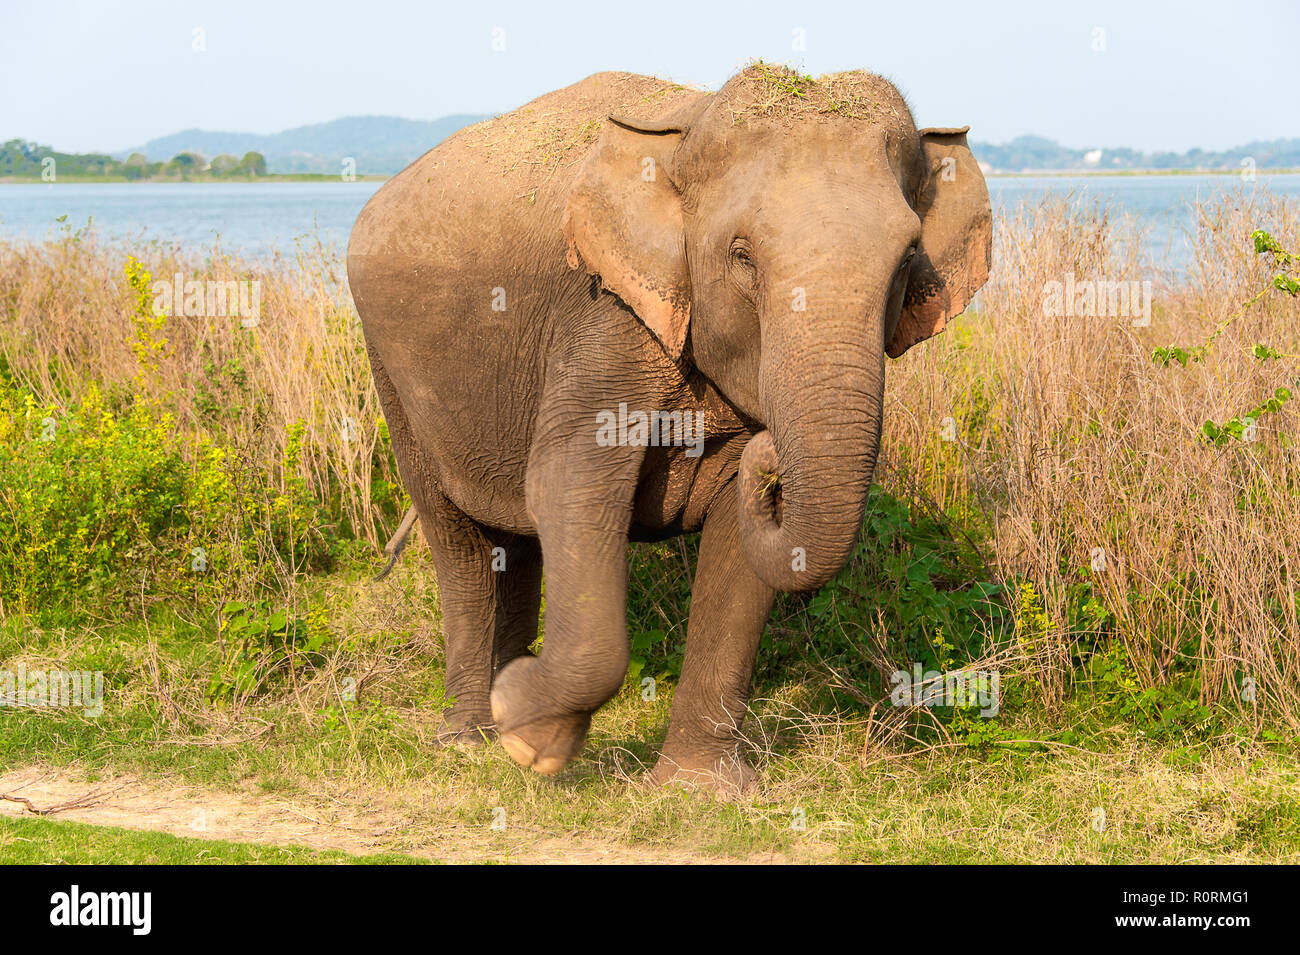 L'éléphant indien féminin (Elephas maximus indicus) émerge de la prairie. Banque D'Images